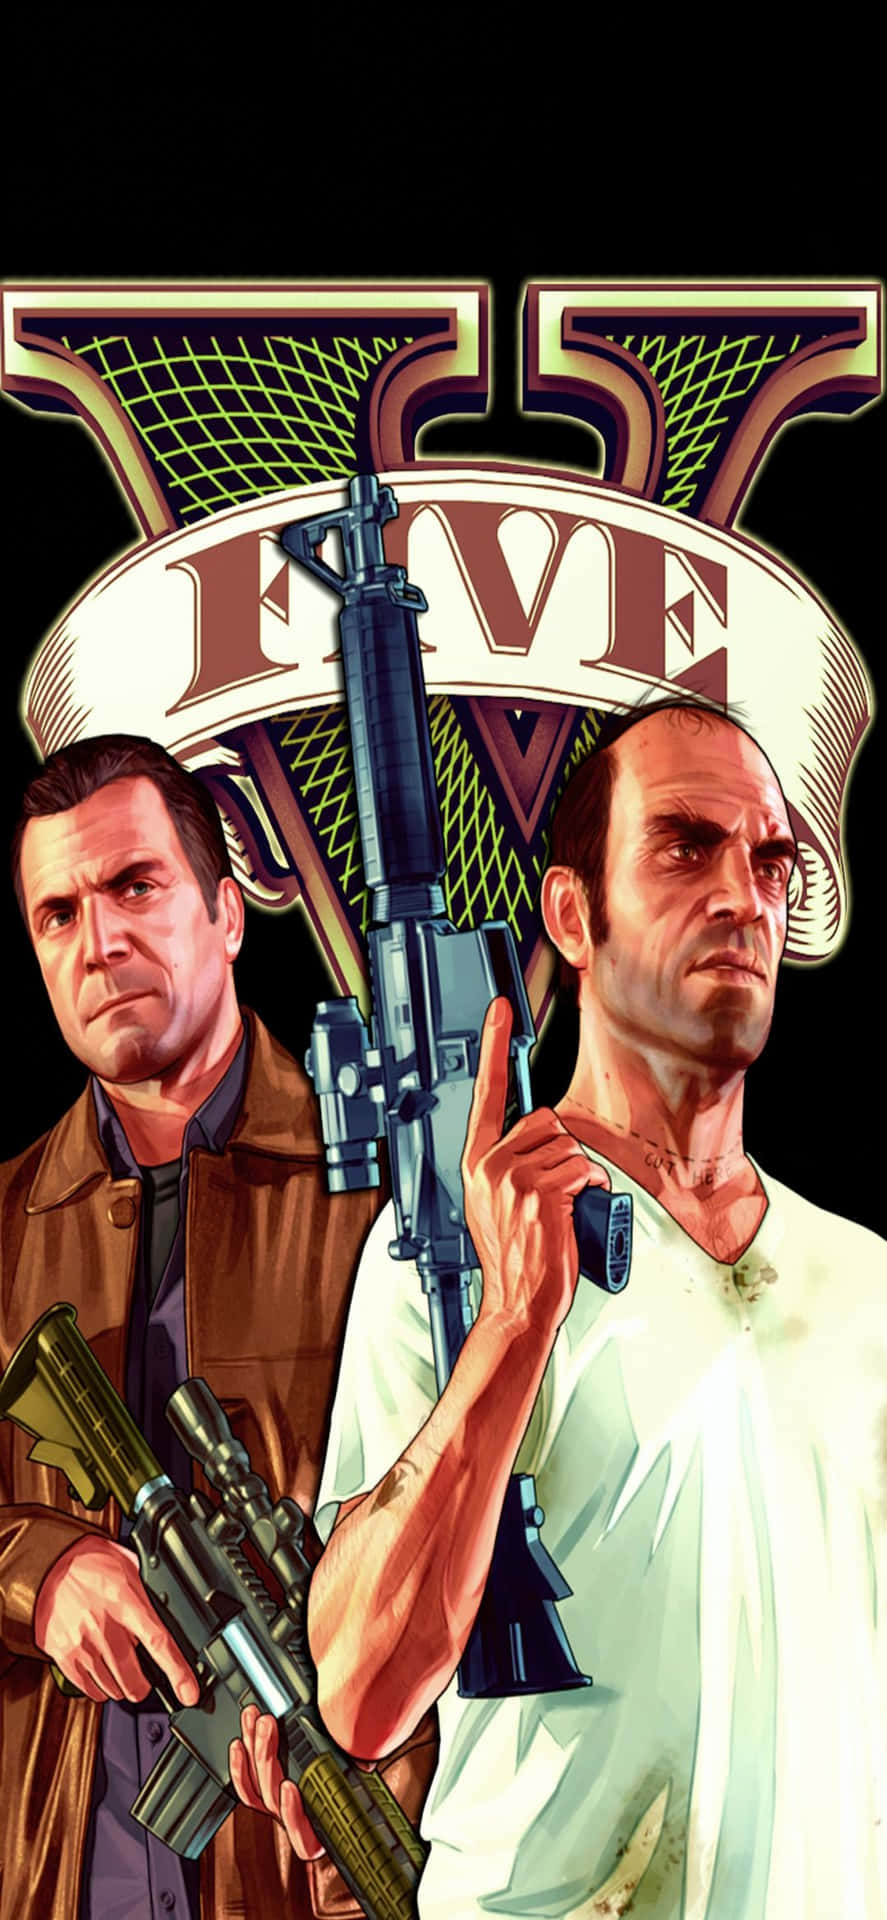 Iphonex Bakgrundsbild För Grand Theft Auto V Med Michael & Trevor.